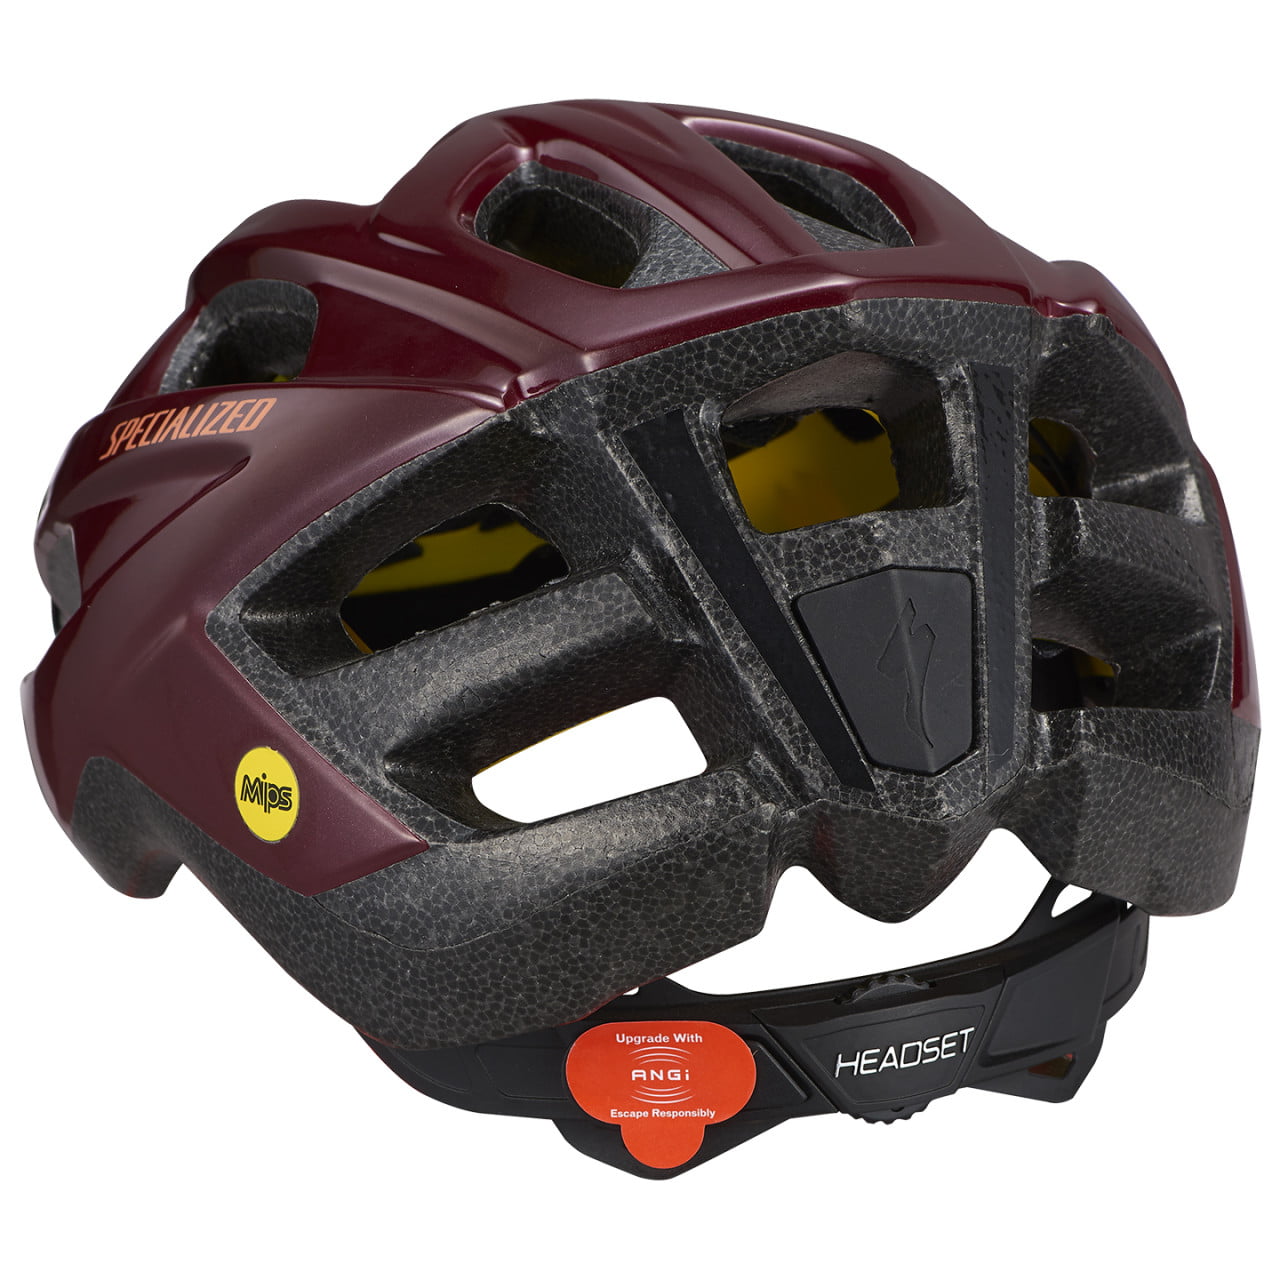 Chamonix Mips II Cycling Helmet